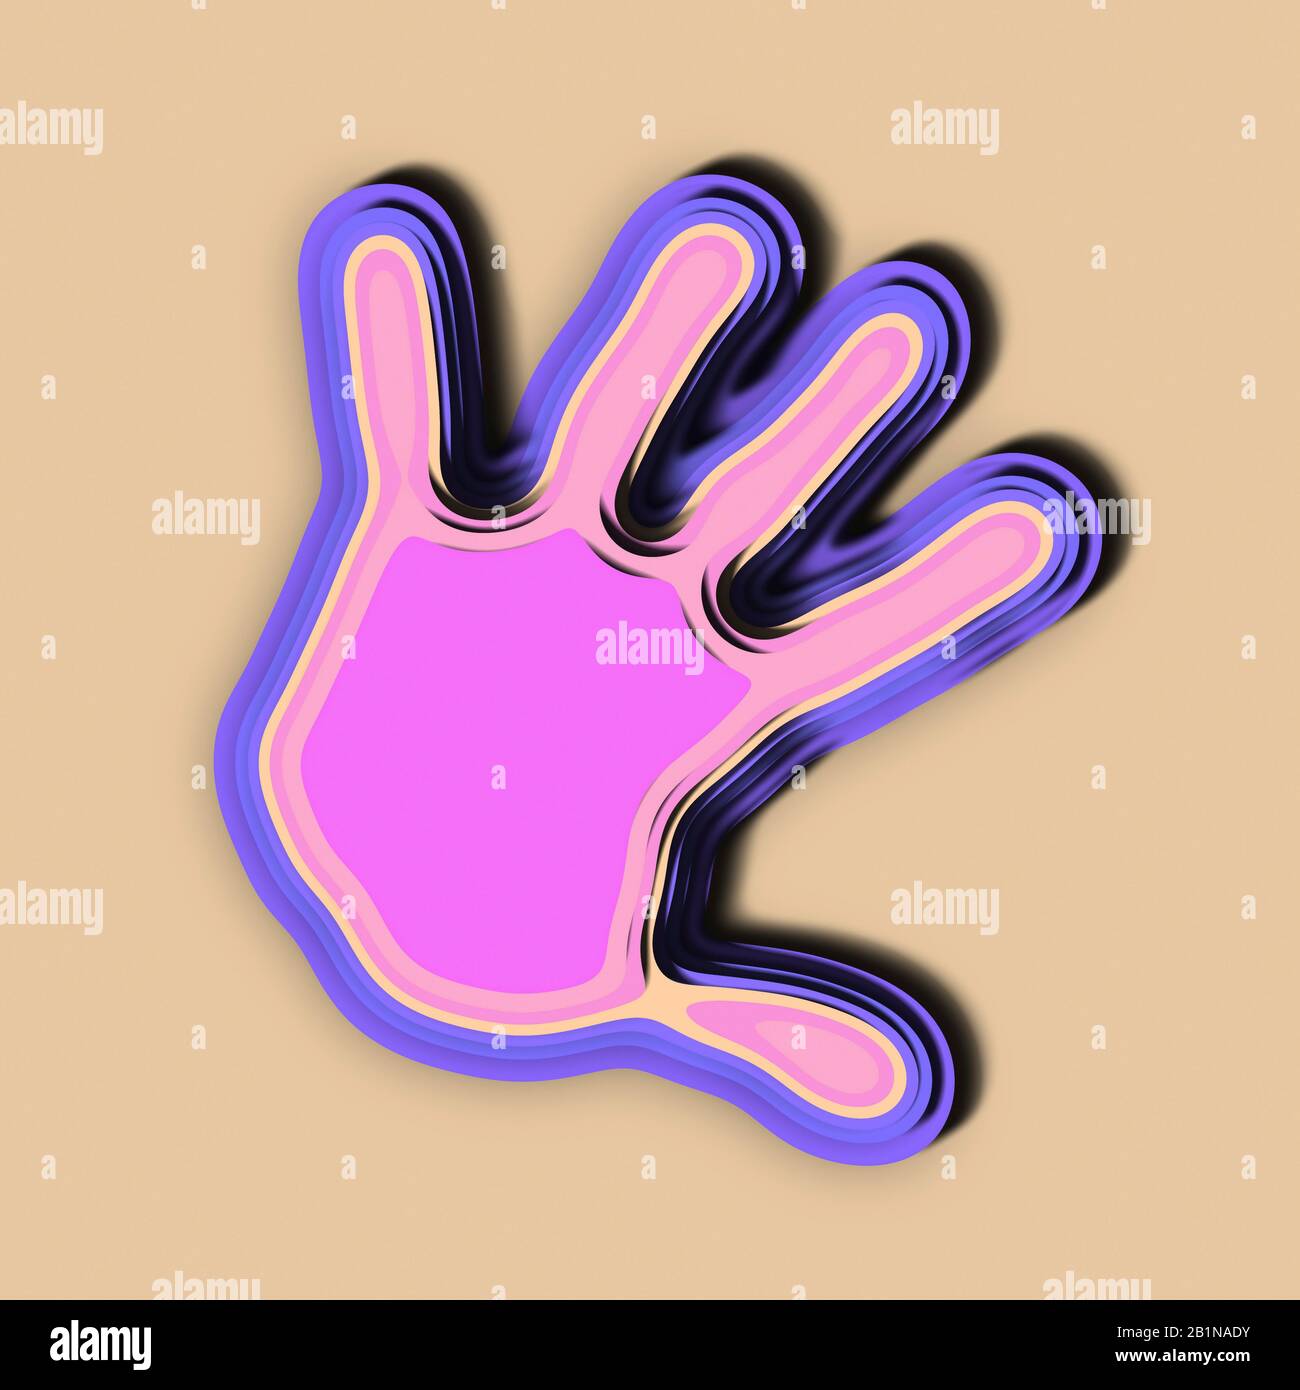 Papierschnitt einer Hand in violetter Farbe vor beigefarbenem Hintergrund Stockfoto